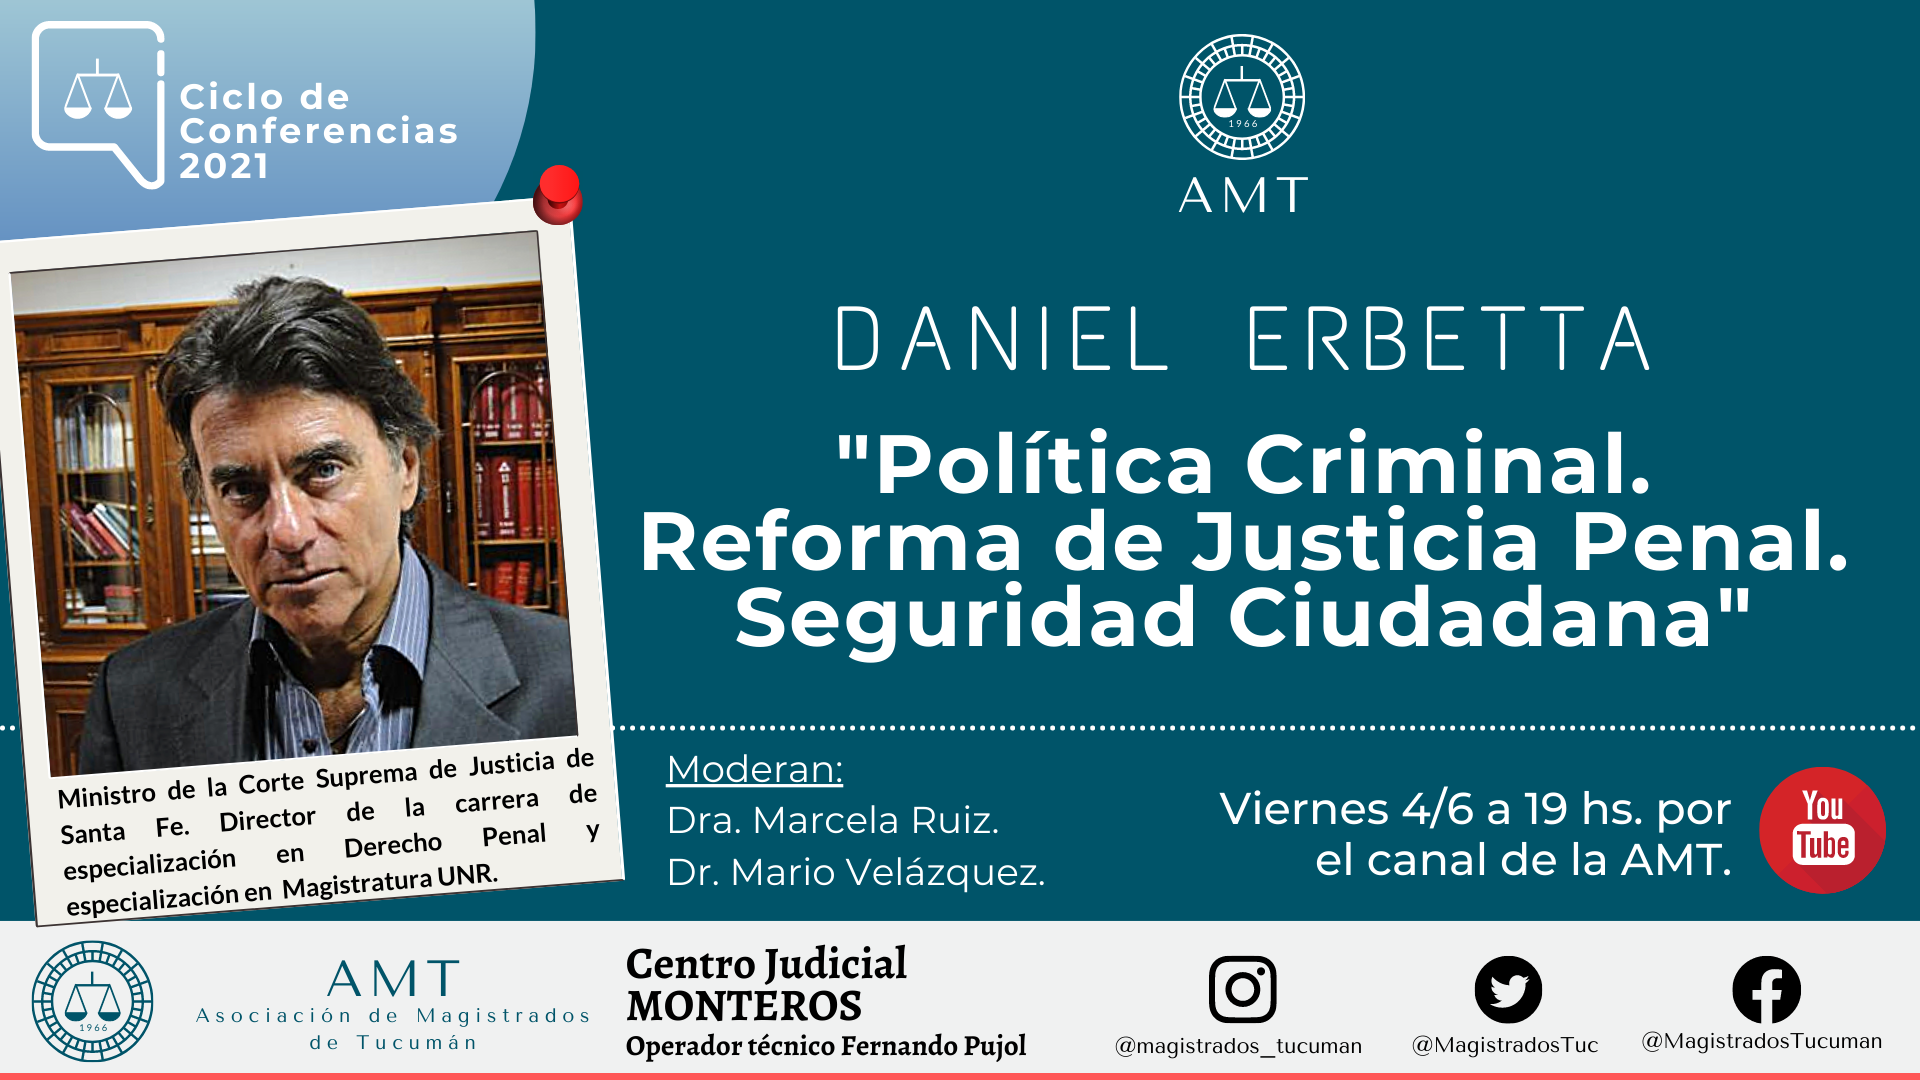 Vuelva a ver la conferencia de Daniel Erbetta «Política Criminal»